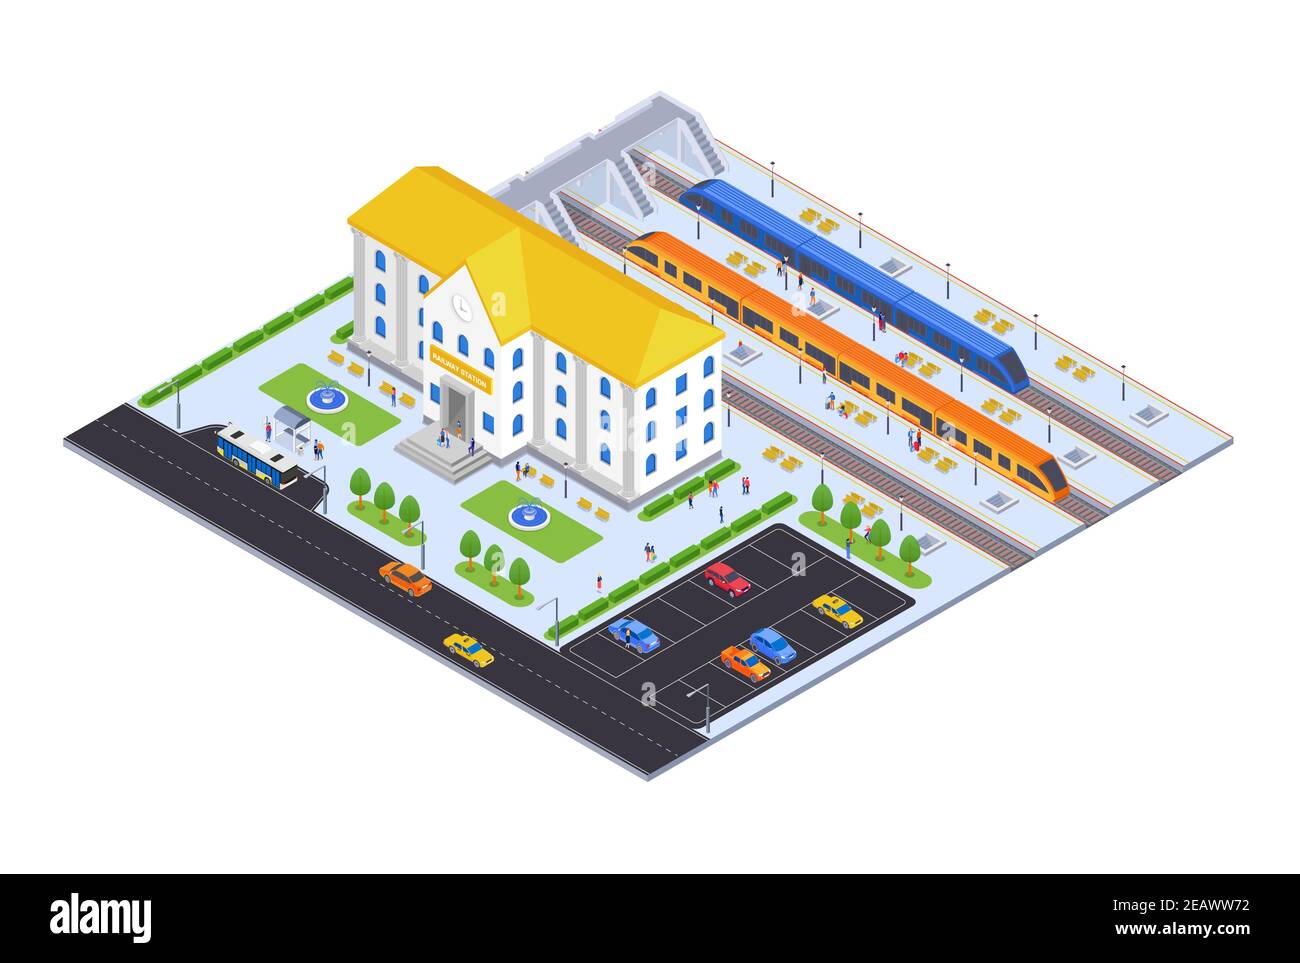 Stazione ferroviaria - moderno vettore colorato illustrazione isometrica. Paesaggio urbano con piattaforme, treni, passeggeri, fermata dell'autobus e parcheggi. Develo Illustrazione Vettoriale